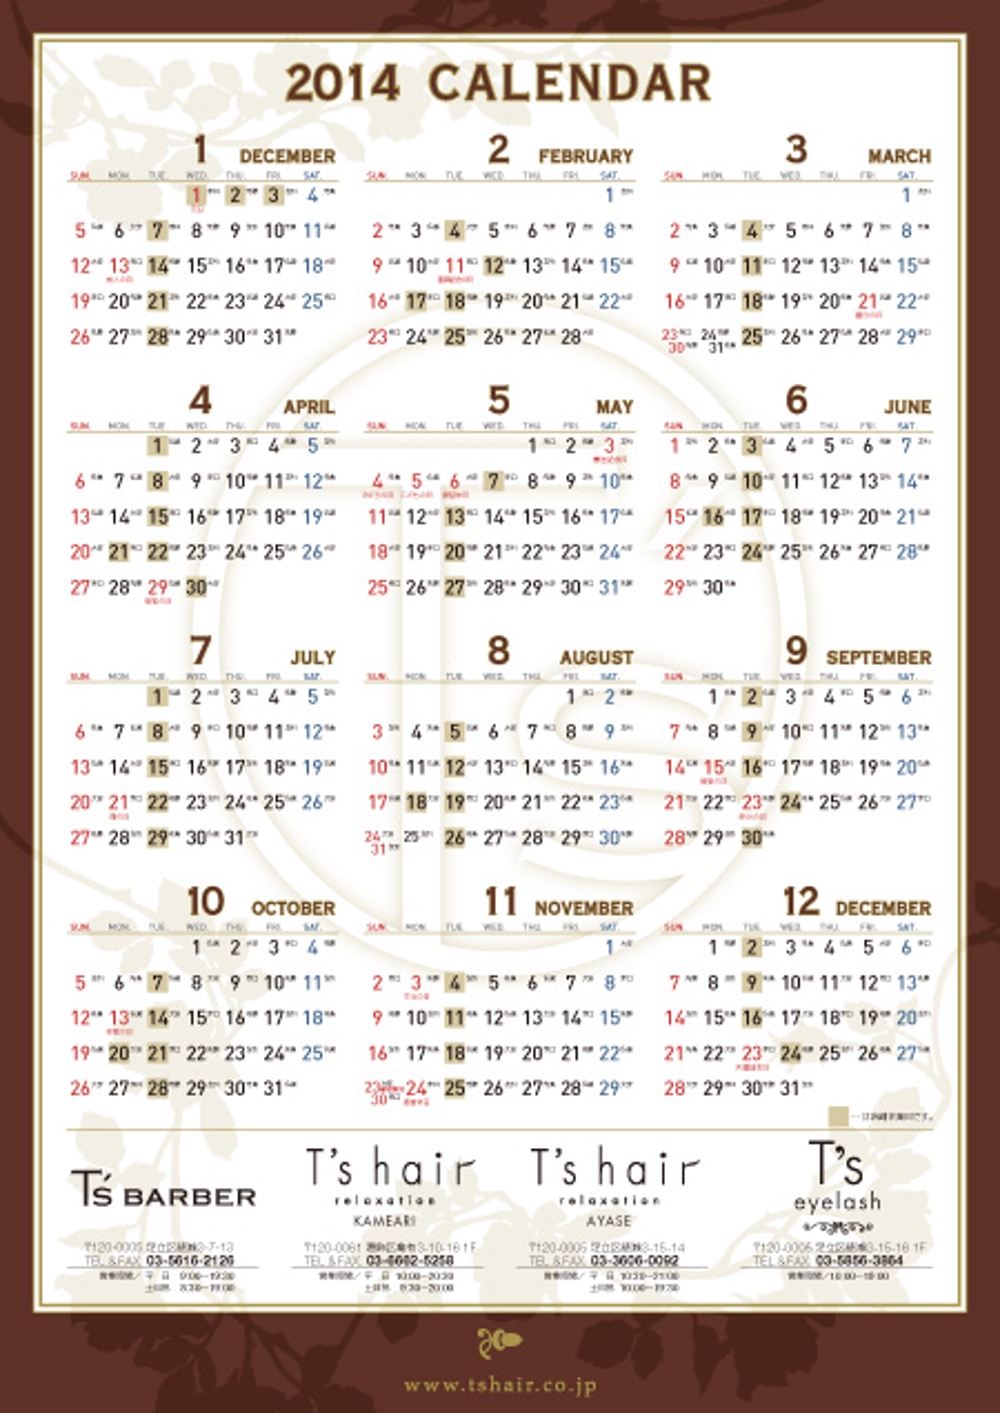  Calendar14_1031.jpg